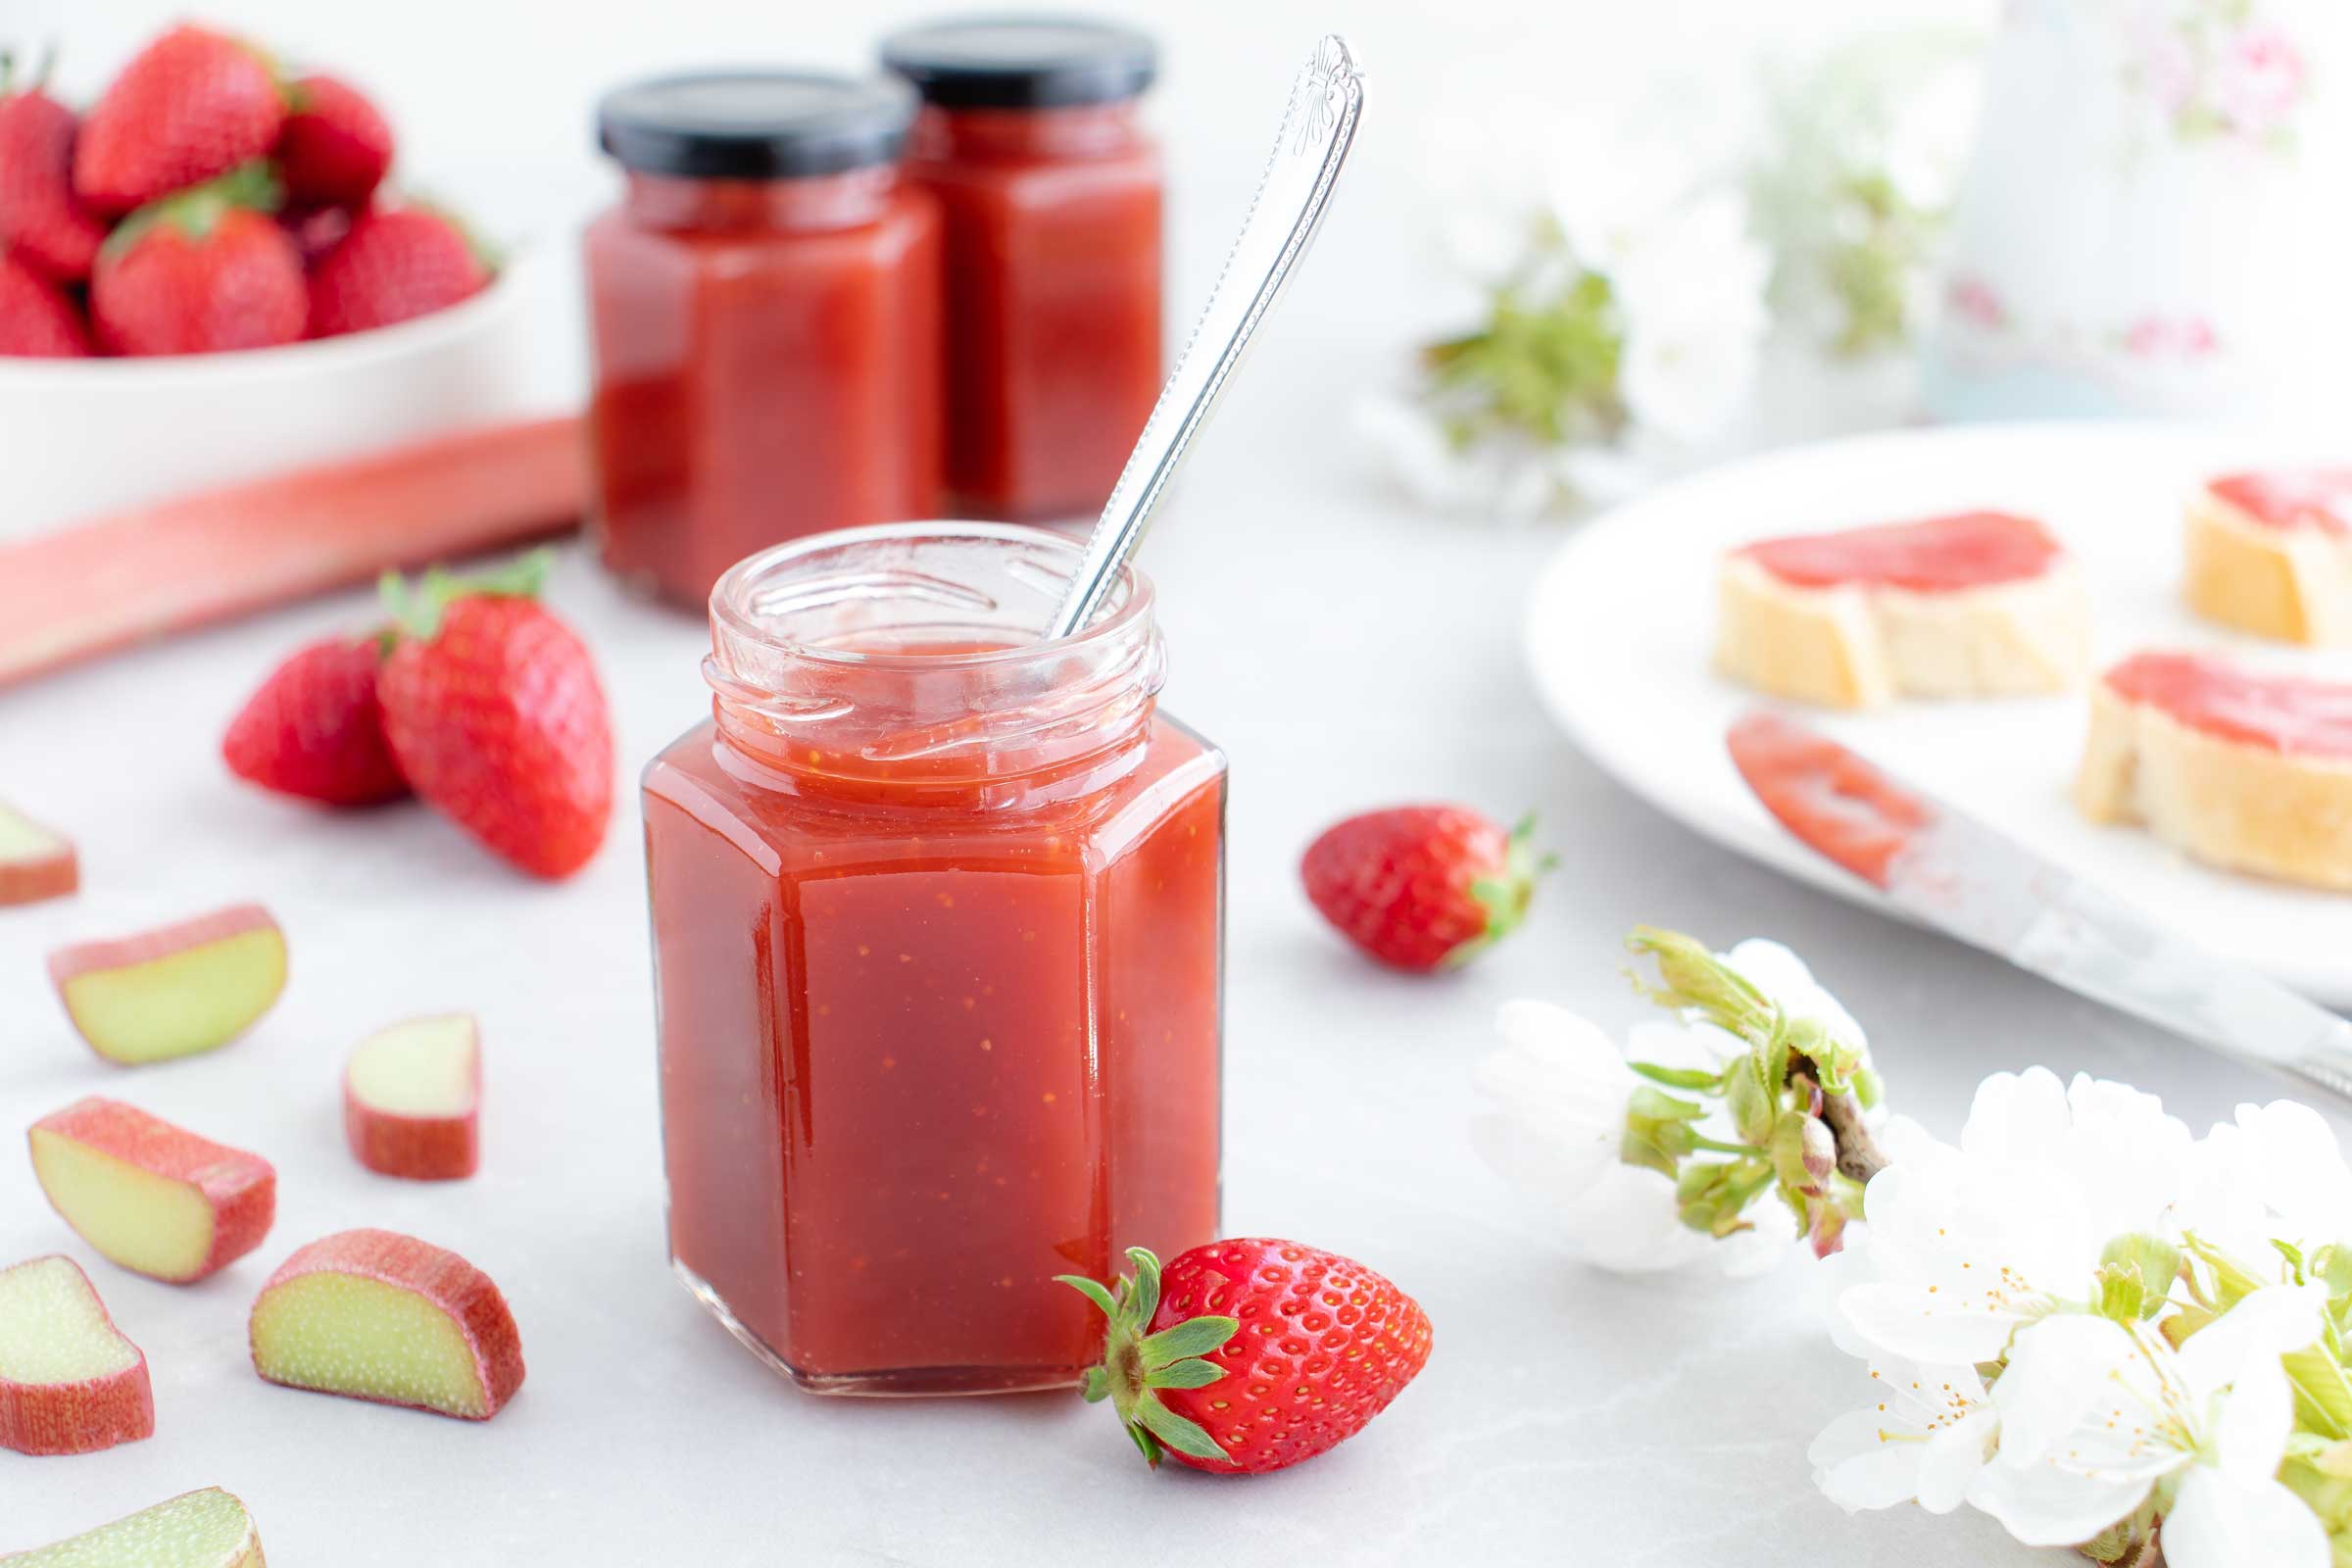 Ein Glas gefüllt mit einer roten Erdbeer-Rhabarber Marmelade steht auf einem weißen Tisch. Neben dem Glas liegen Erdbeeren, Rhabarber und ein Teller auf dem Brote liegen, bestrichen mit der Erdbeer-Rhabarber Marmelade.